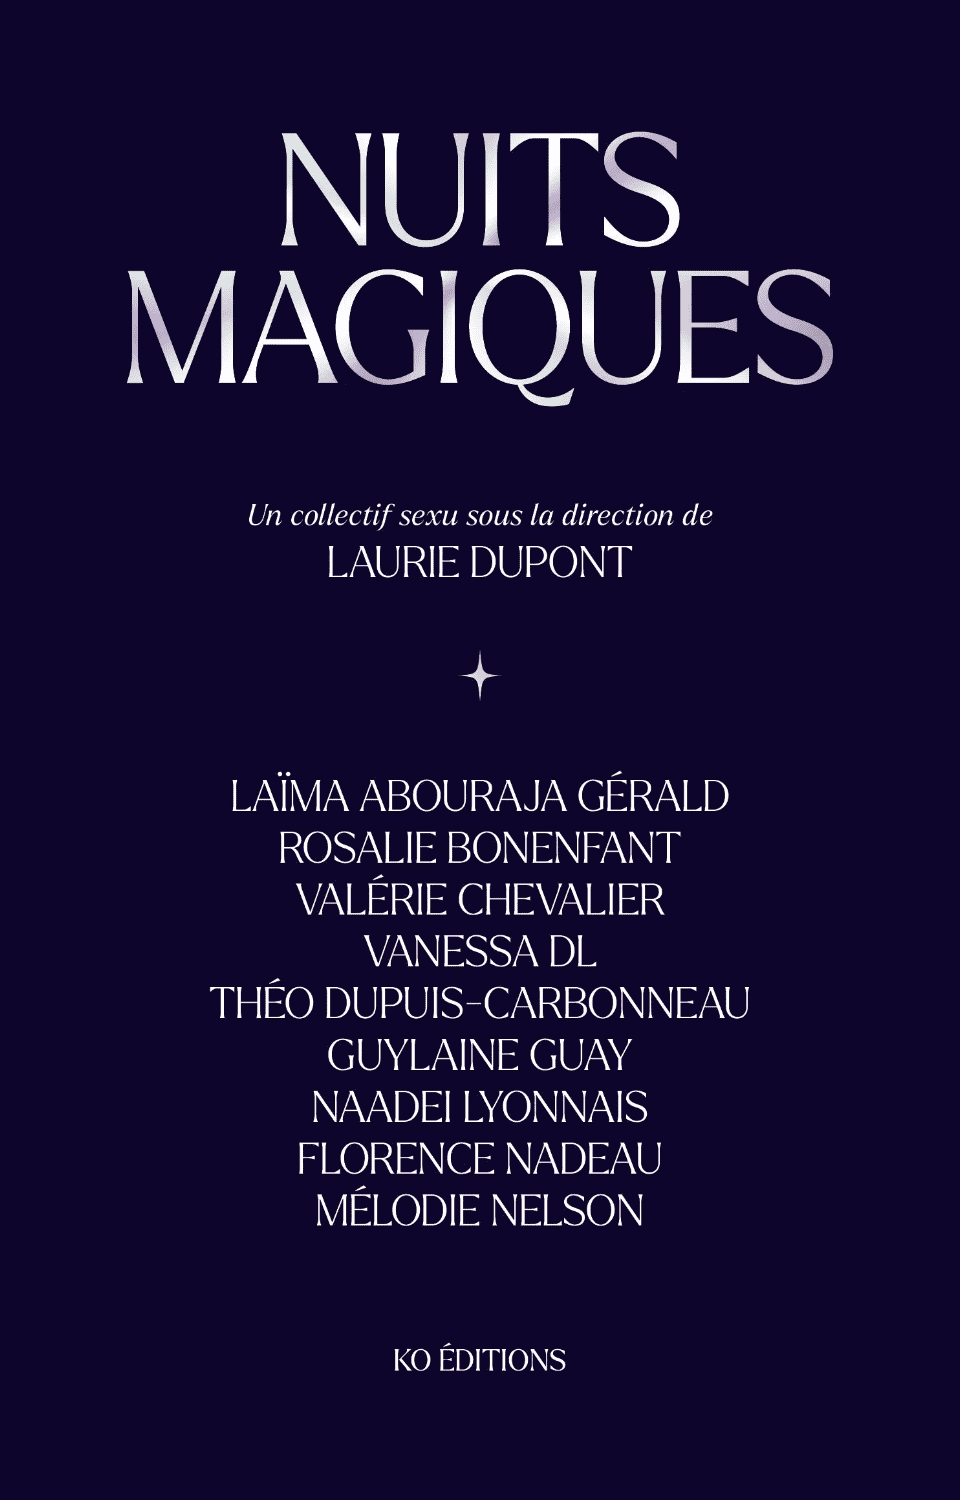 Nuits magiques, Collectif, dir. Laurie Dupont, KO Éditions, Lectures self-care pour la Saint-Valentin